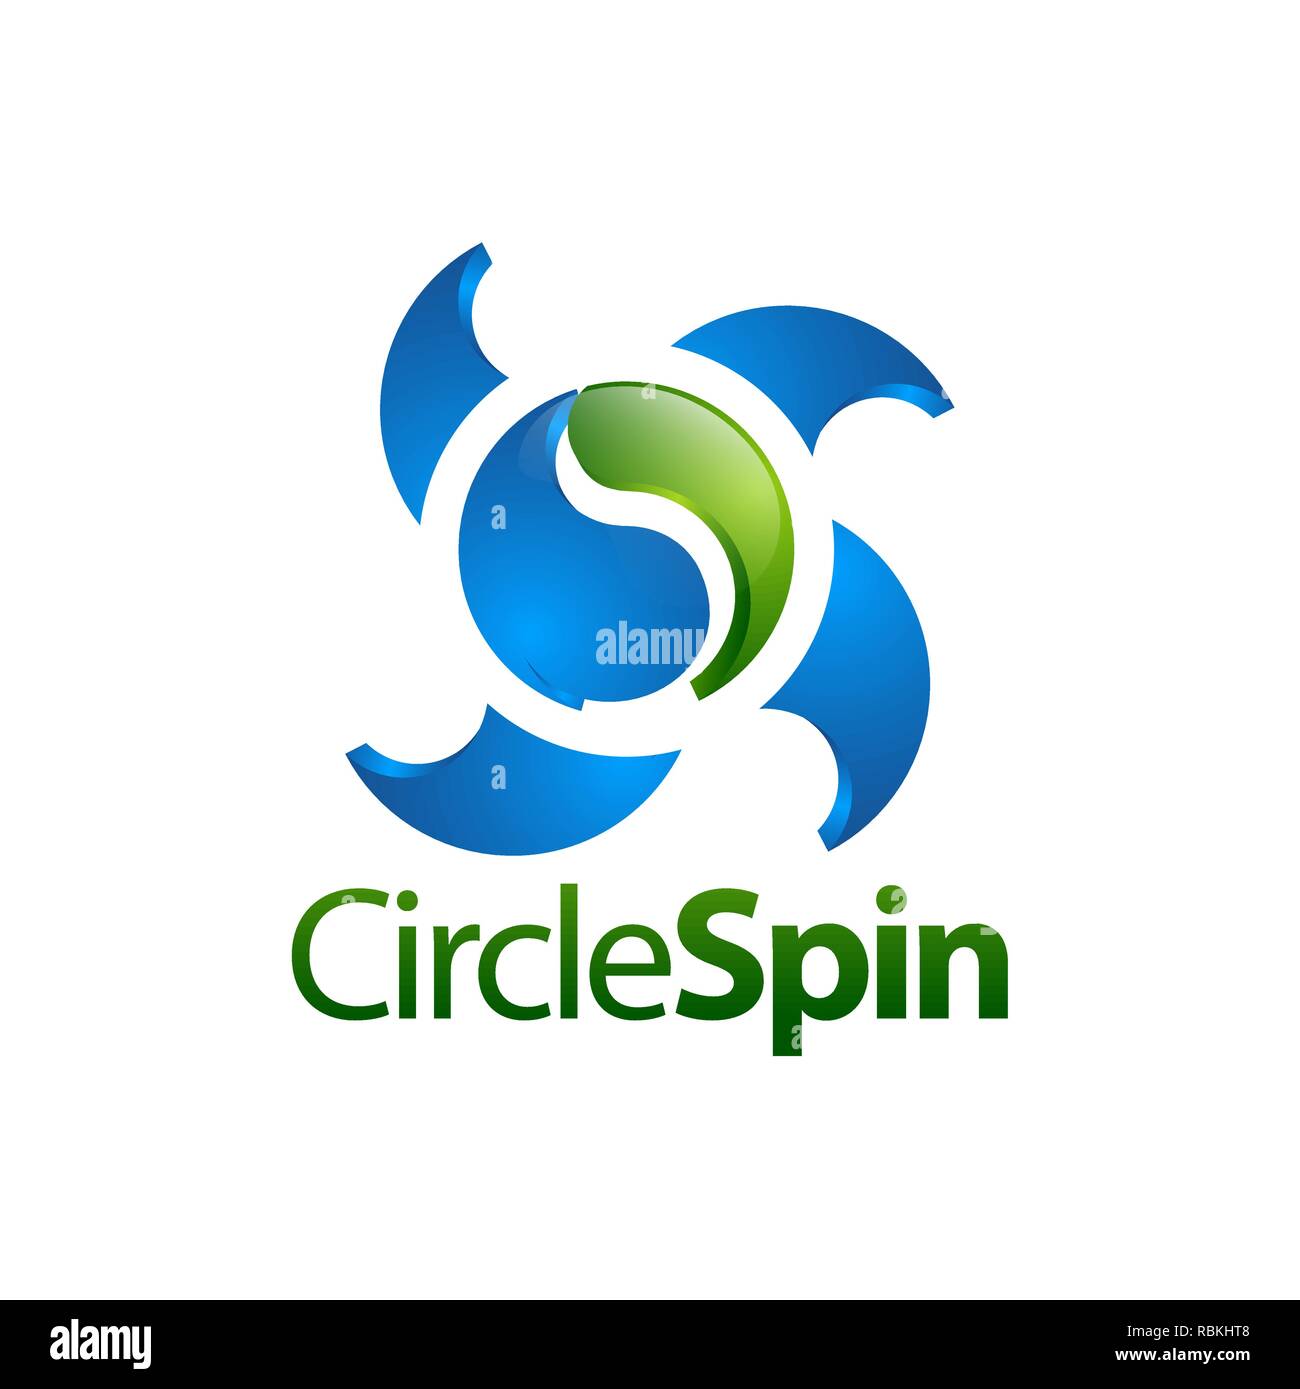 Cerchio spin. Tridimensionali di yin yang logo spin concept design template idea Illustrazione Vettoriale